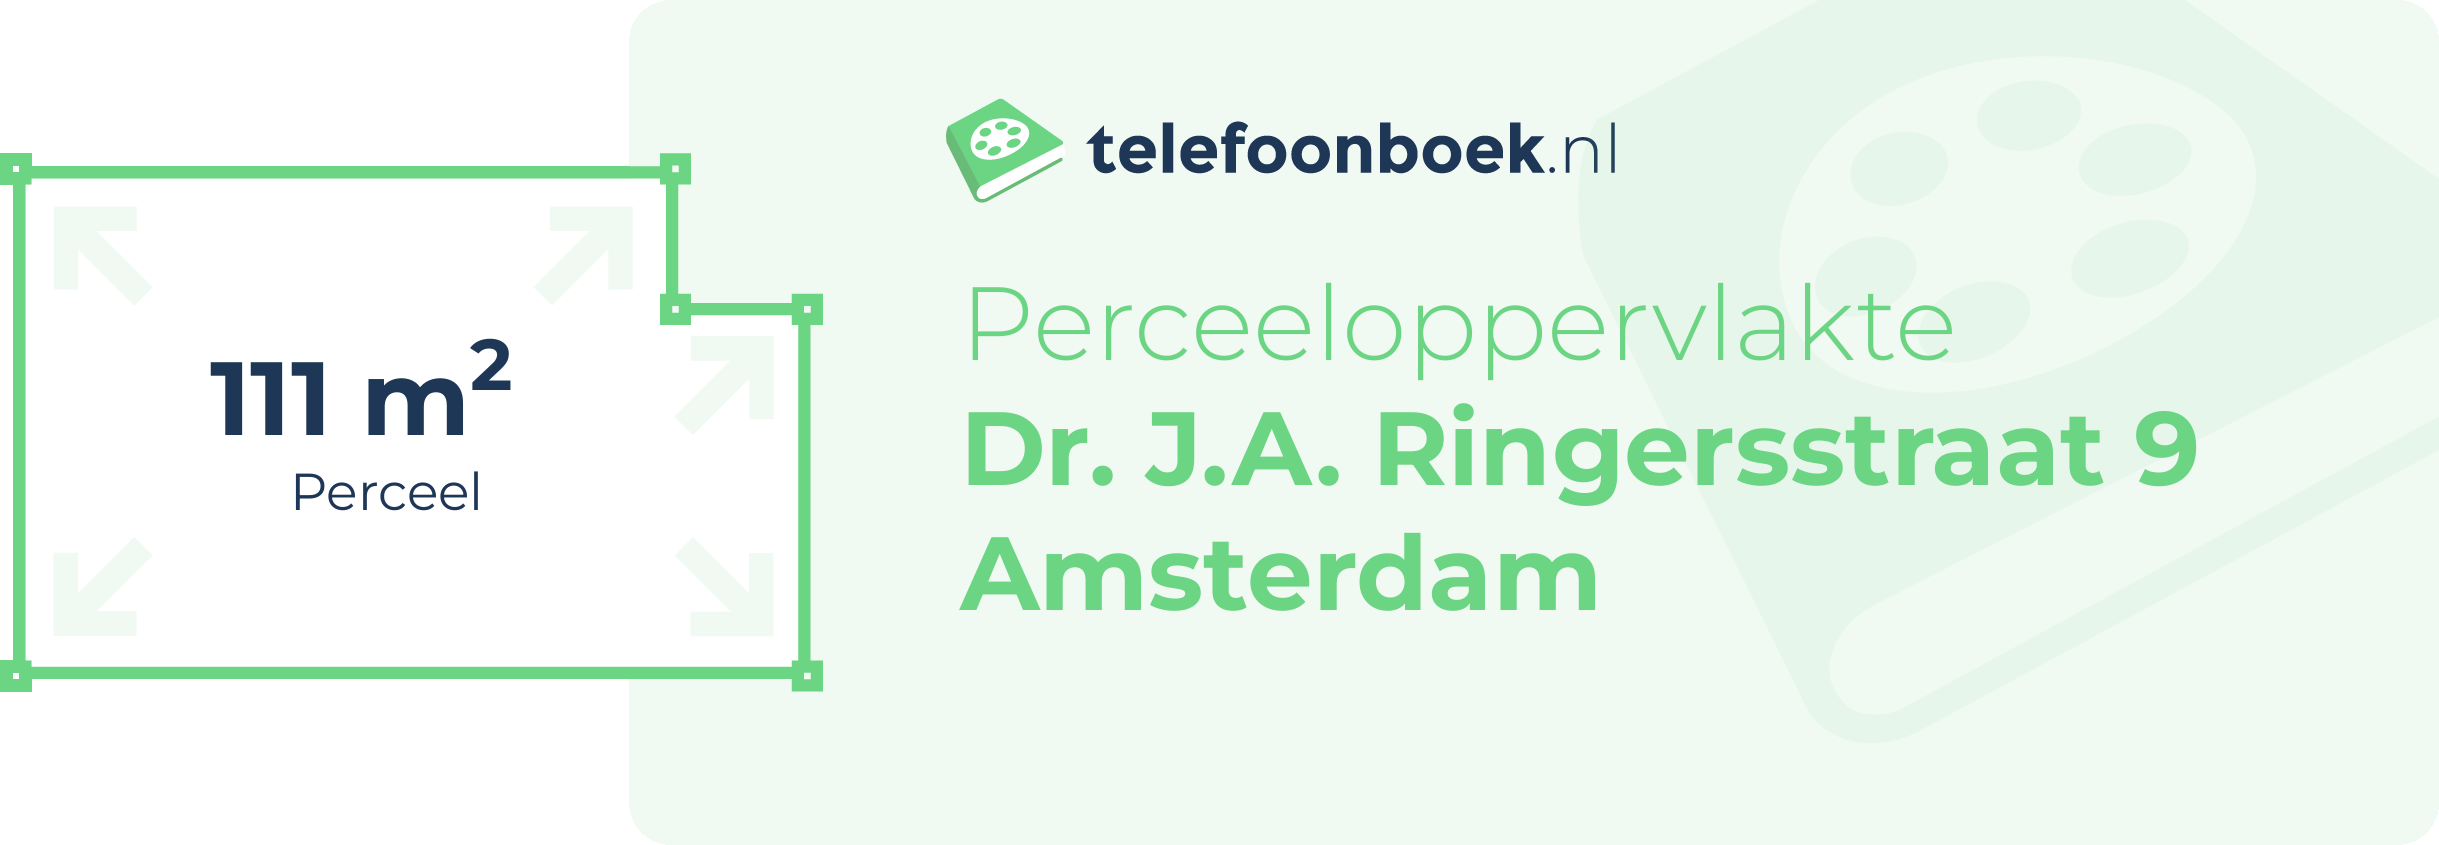 Perceeloppervlakte Dr. J.A. Ringersstraat 9 Amsterdam